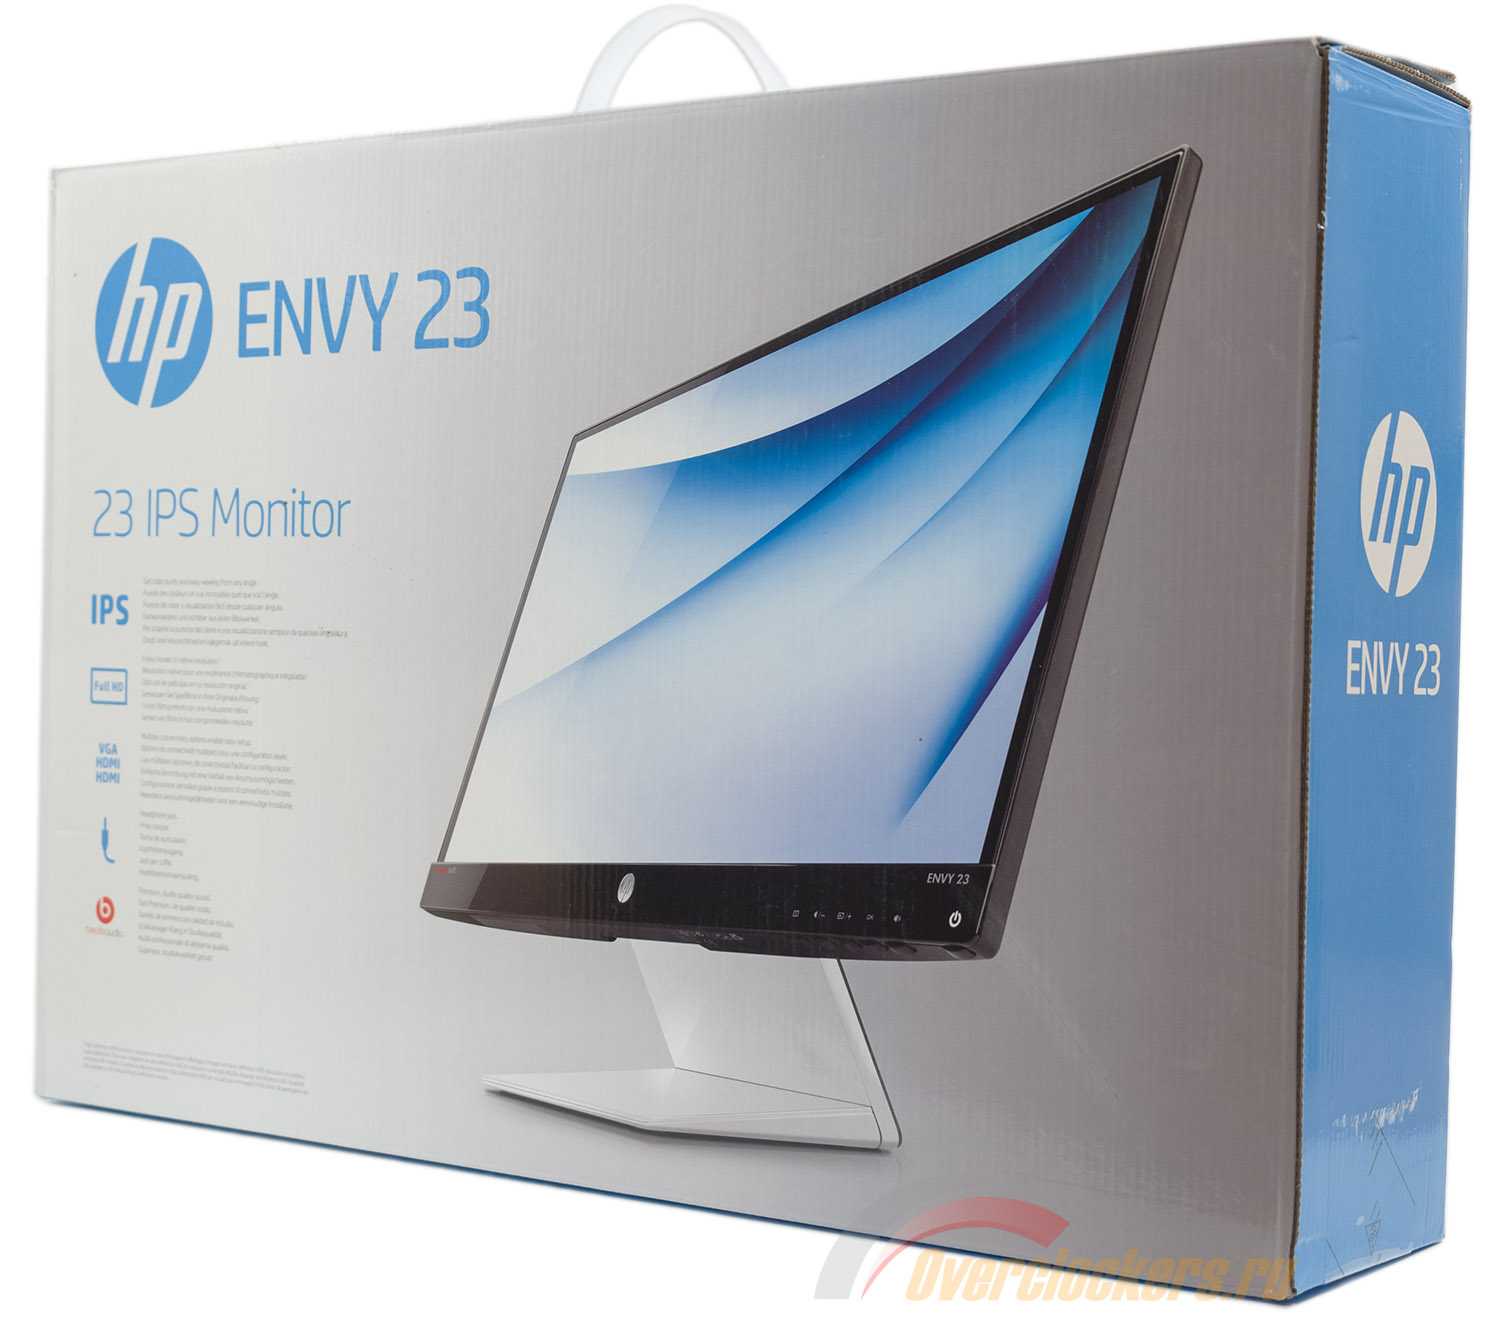 Монитор HP ENVY 23 - подробные характеристики обзоры видео фото Цены в интернет-магазинах где можно купить монитор HP ENVY 23